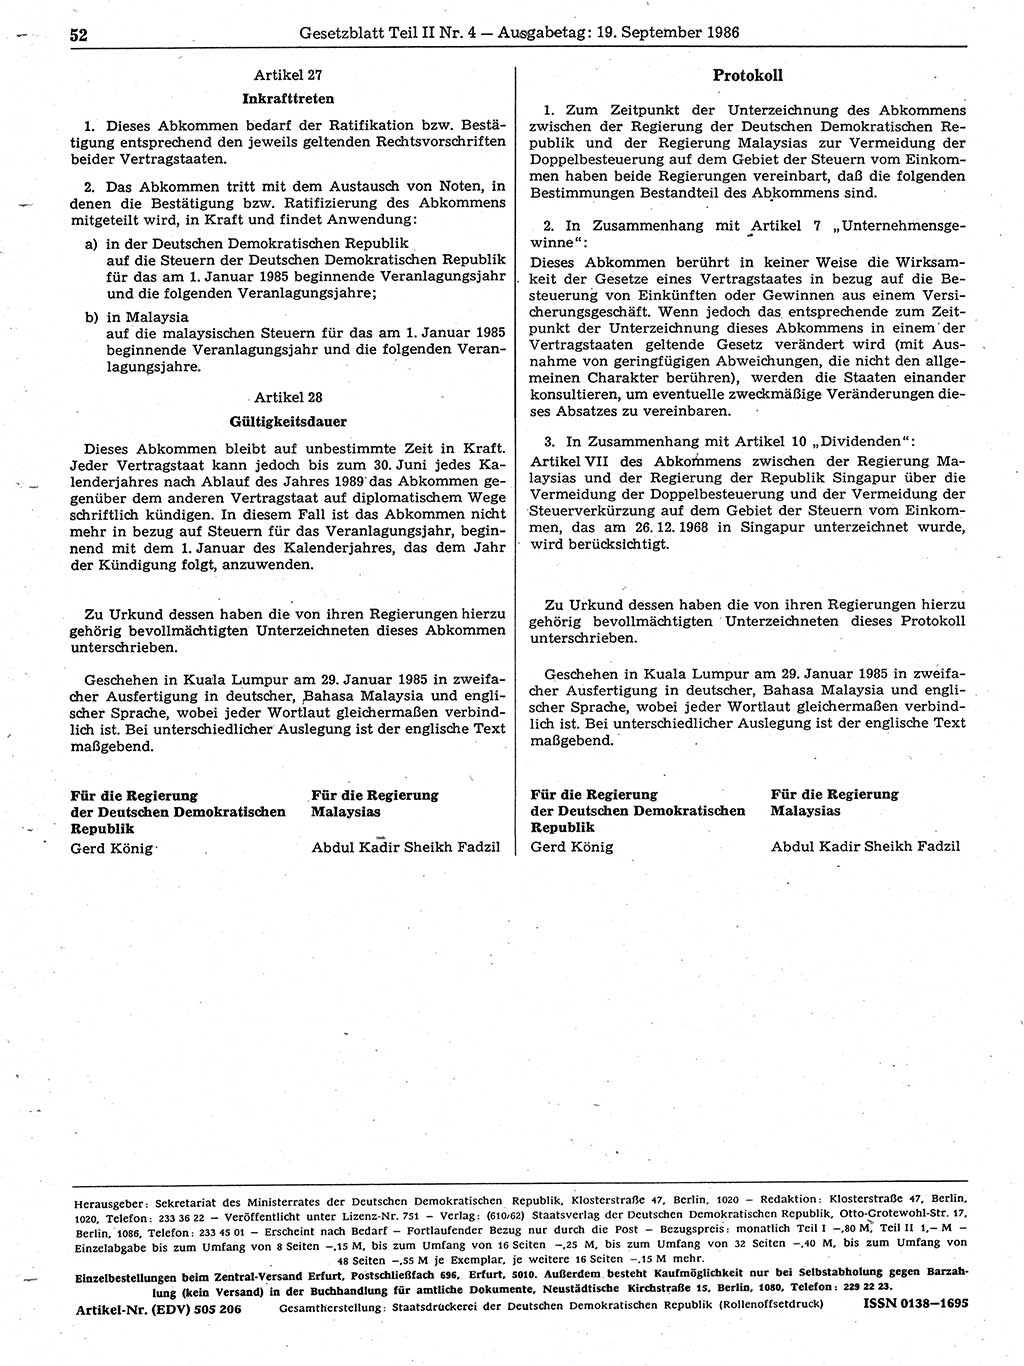 Gesetzblatt (GBl.) der Deutschen Demokratischen Republik (DDR) Teil ⅠⅠ 1986, Seite 52 (GBl. DDR ⅠⅠ 1986, S. 52)